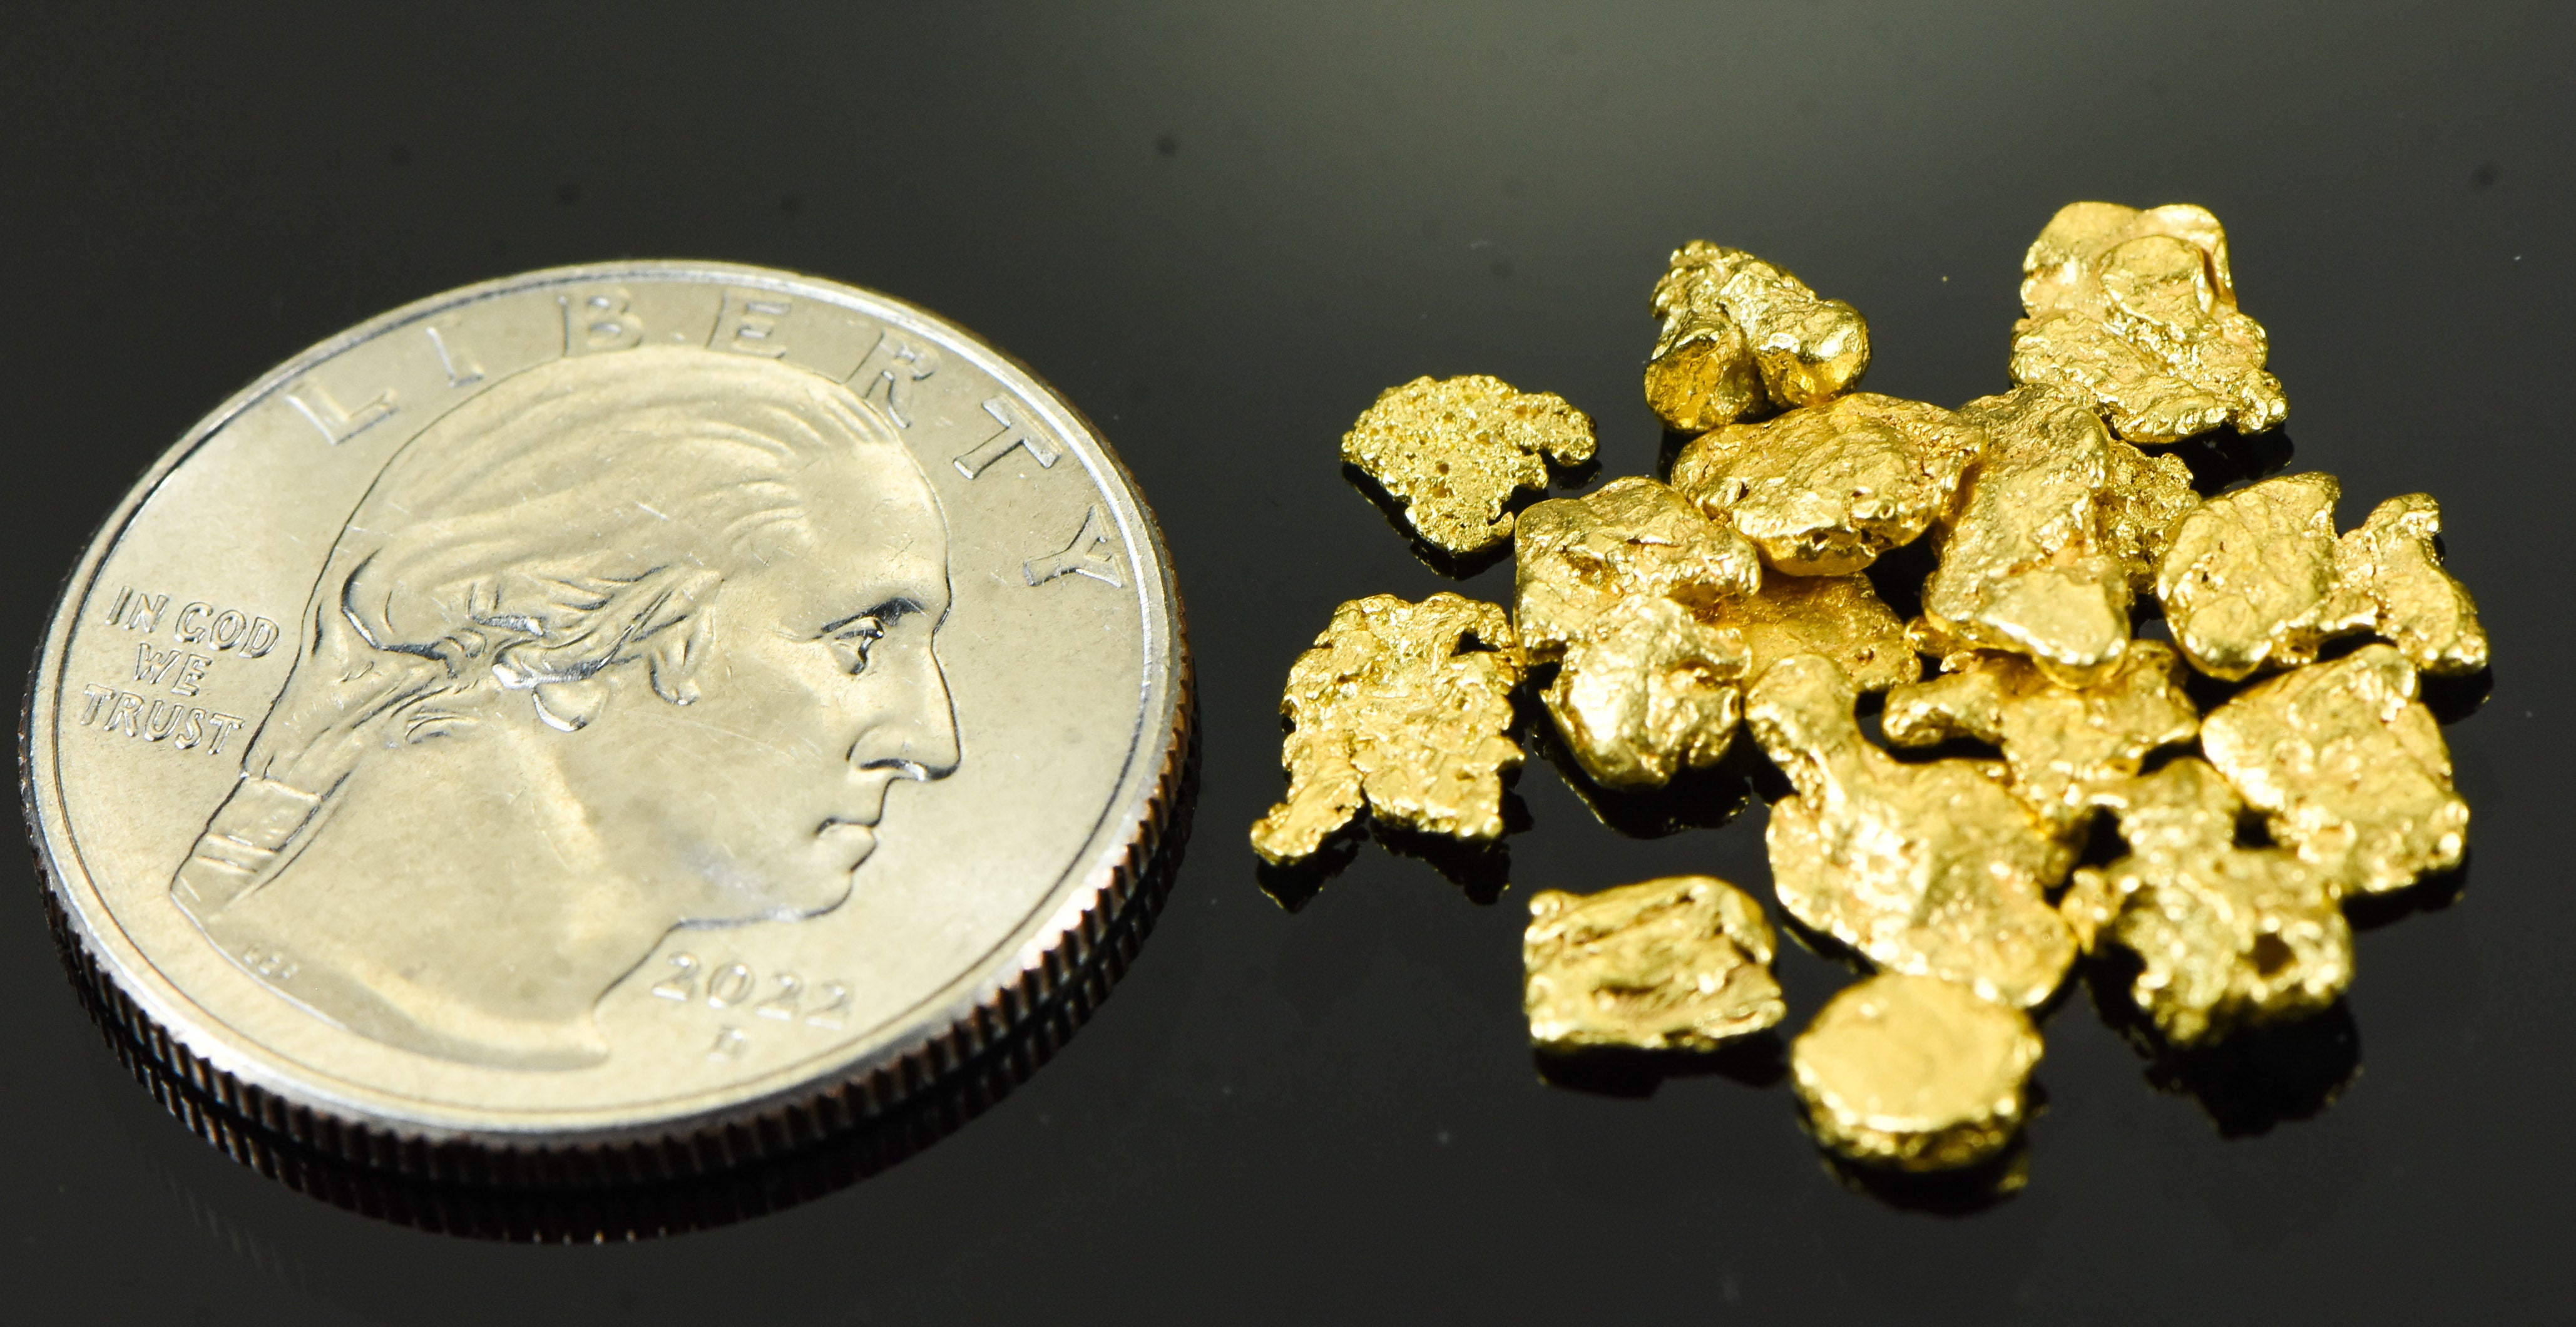 Alaskan Yukon BC Gold Rush Nuggets #6 Mesh .15 Troy Oz 4.65 Grams or 3 DWT